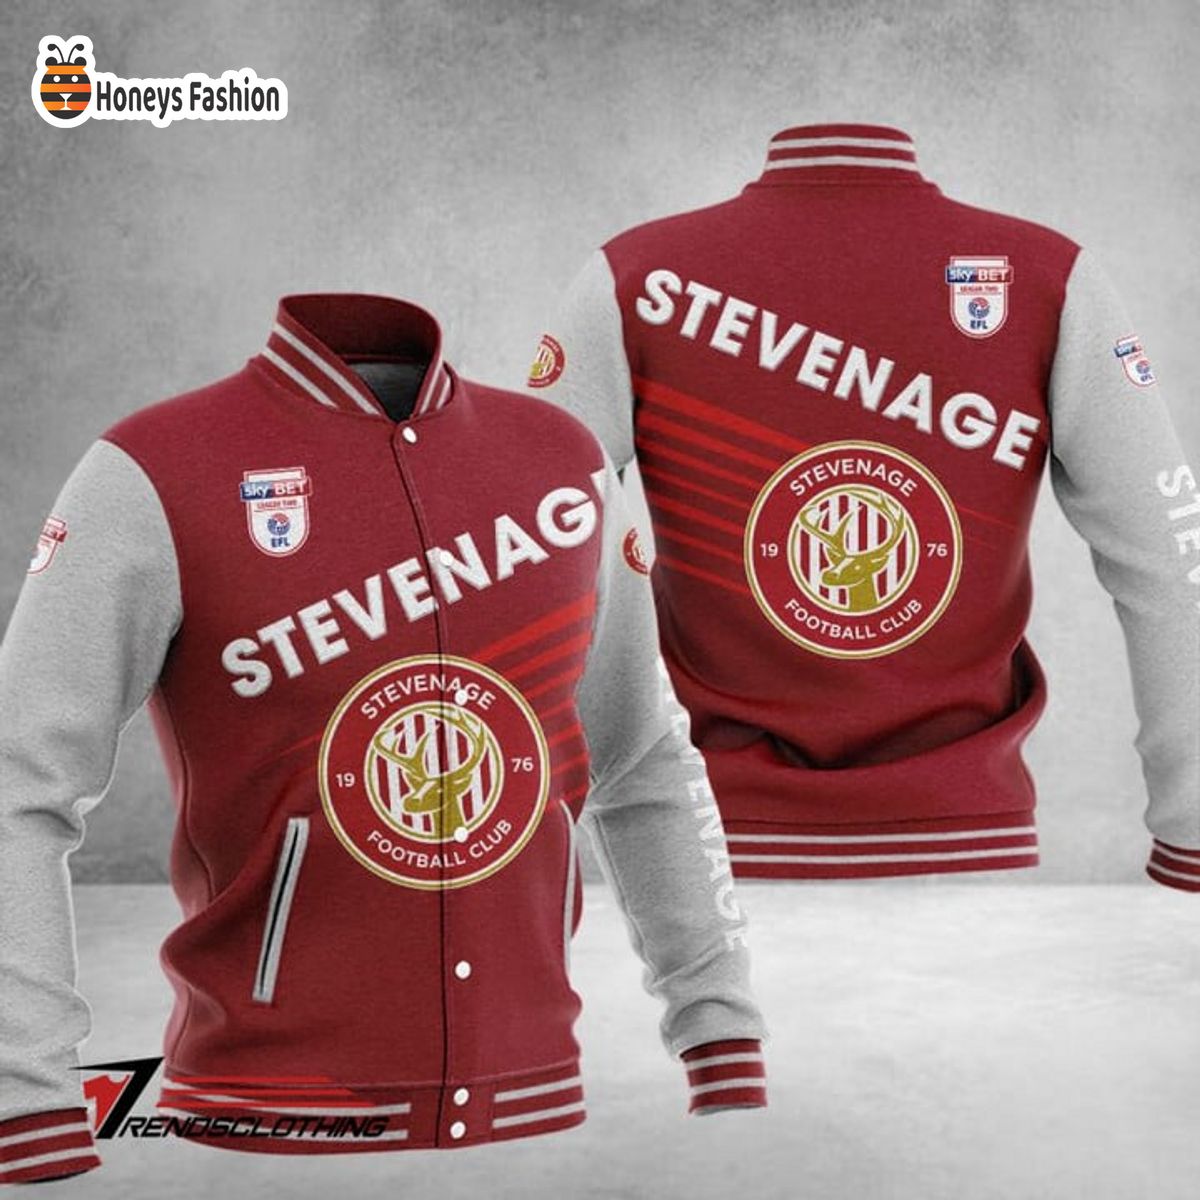 Stevenage Football Club Baseball Jacket